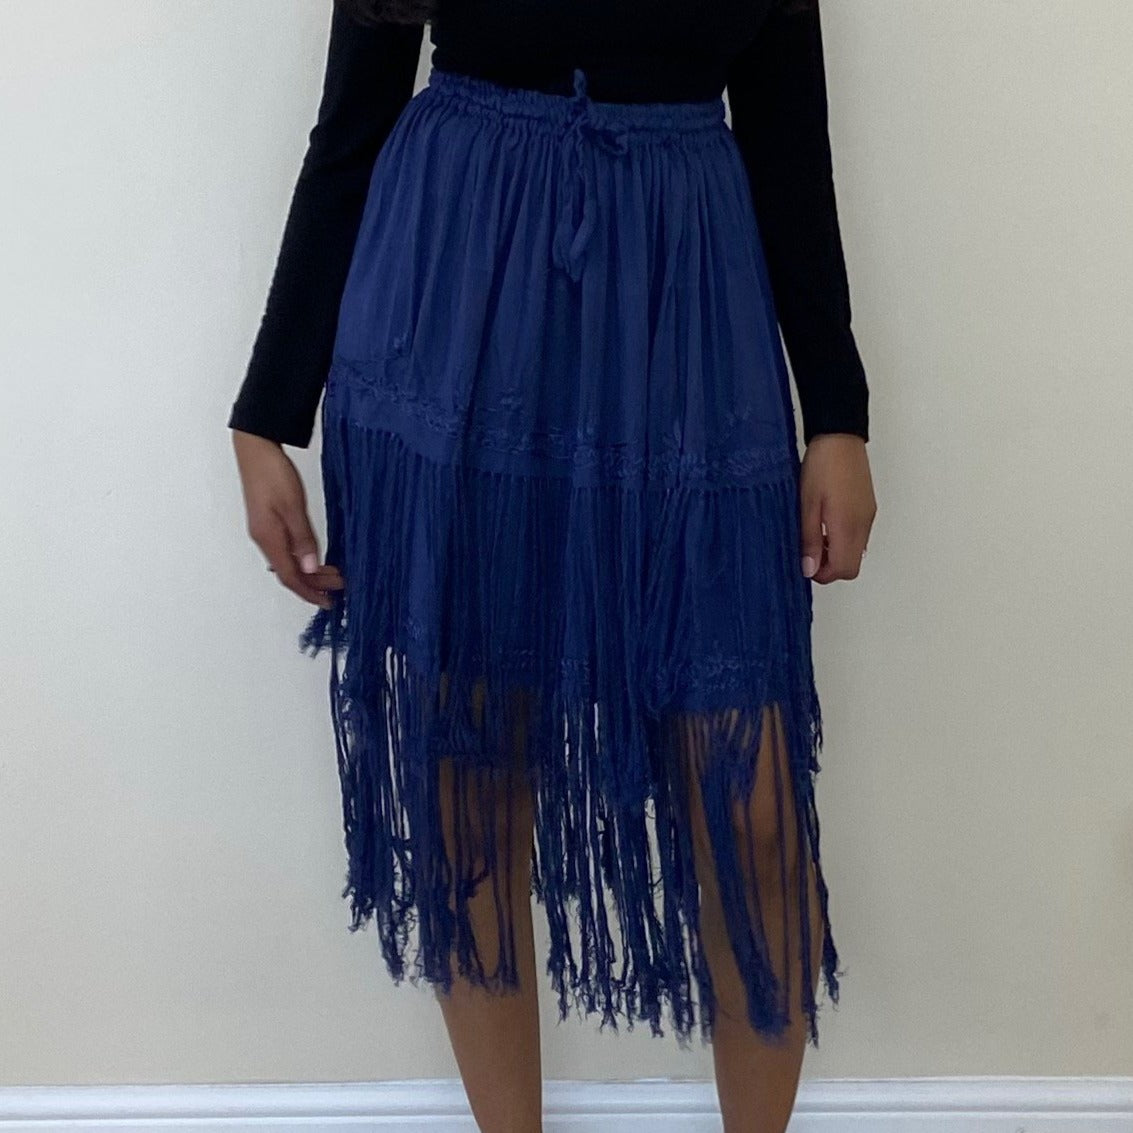 Black High Waisted Midi Fringe Skirt - Black / S